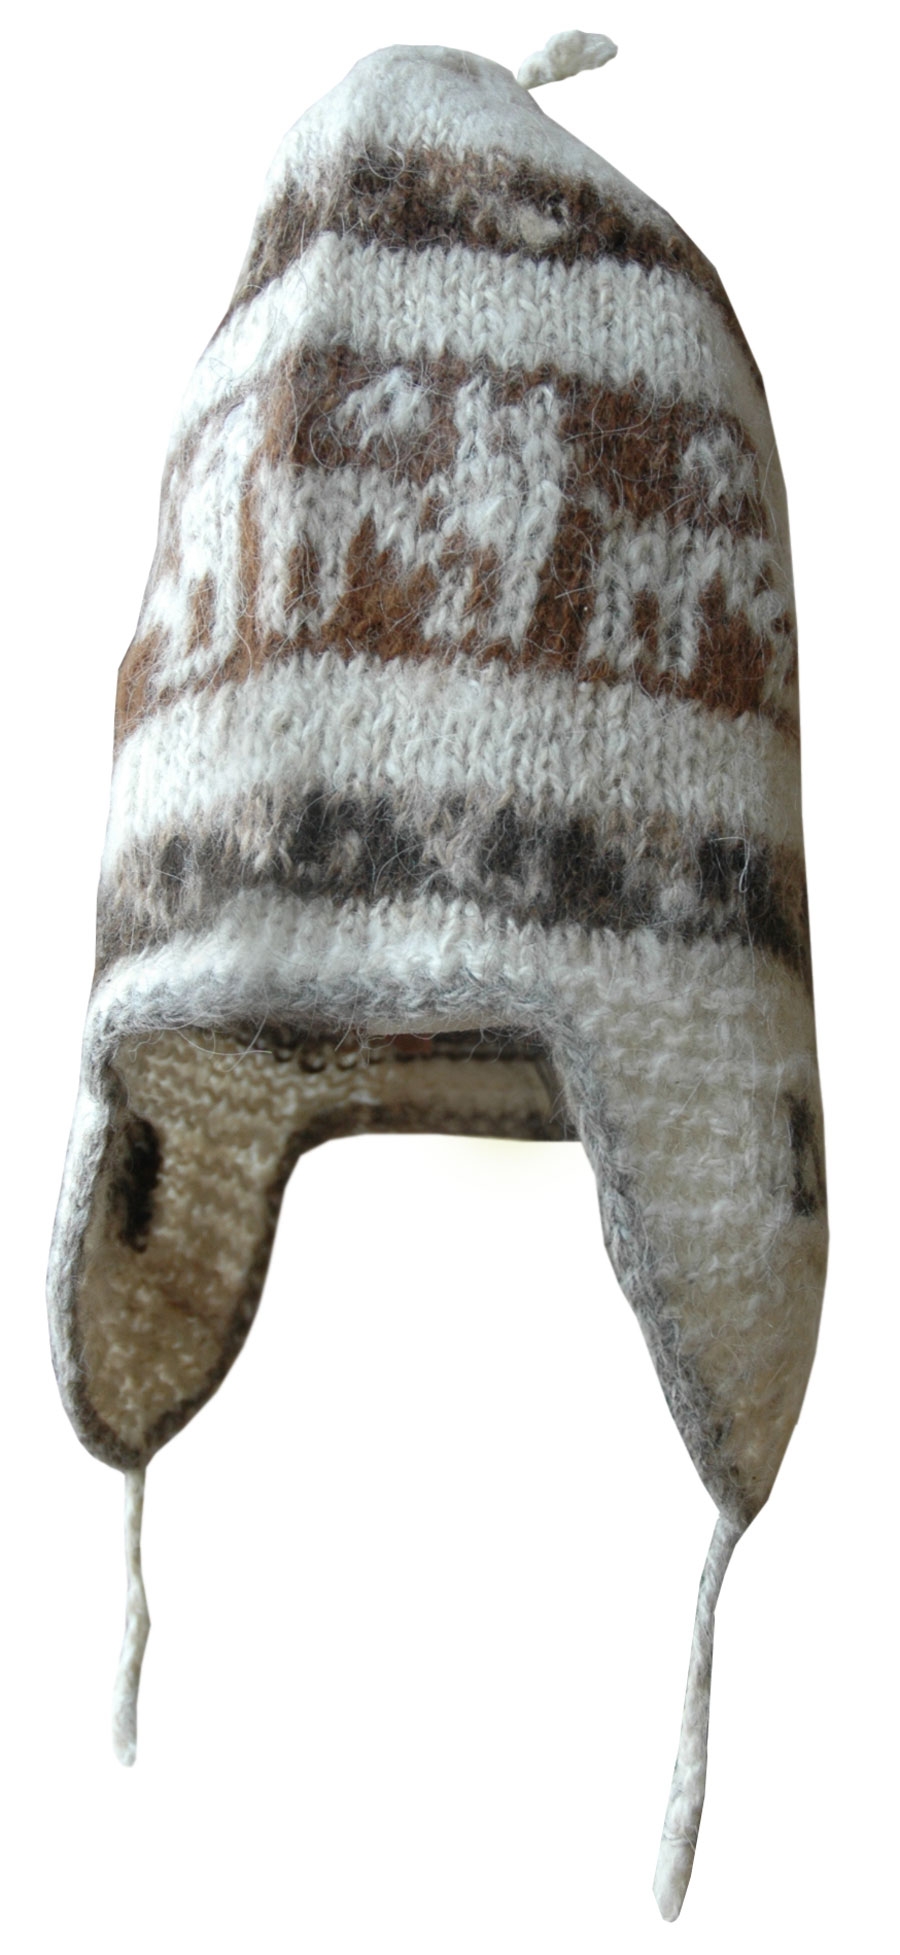 Casquette en laine homme très chaude - La Maison de l'Alpaga (LMA)